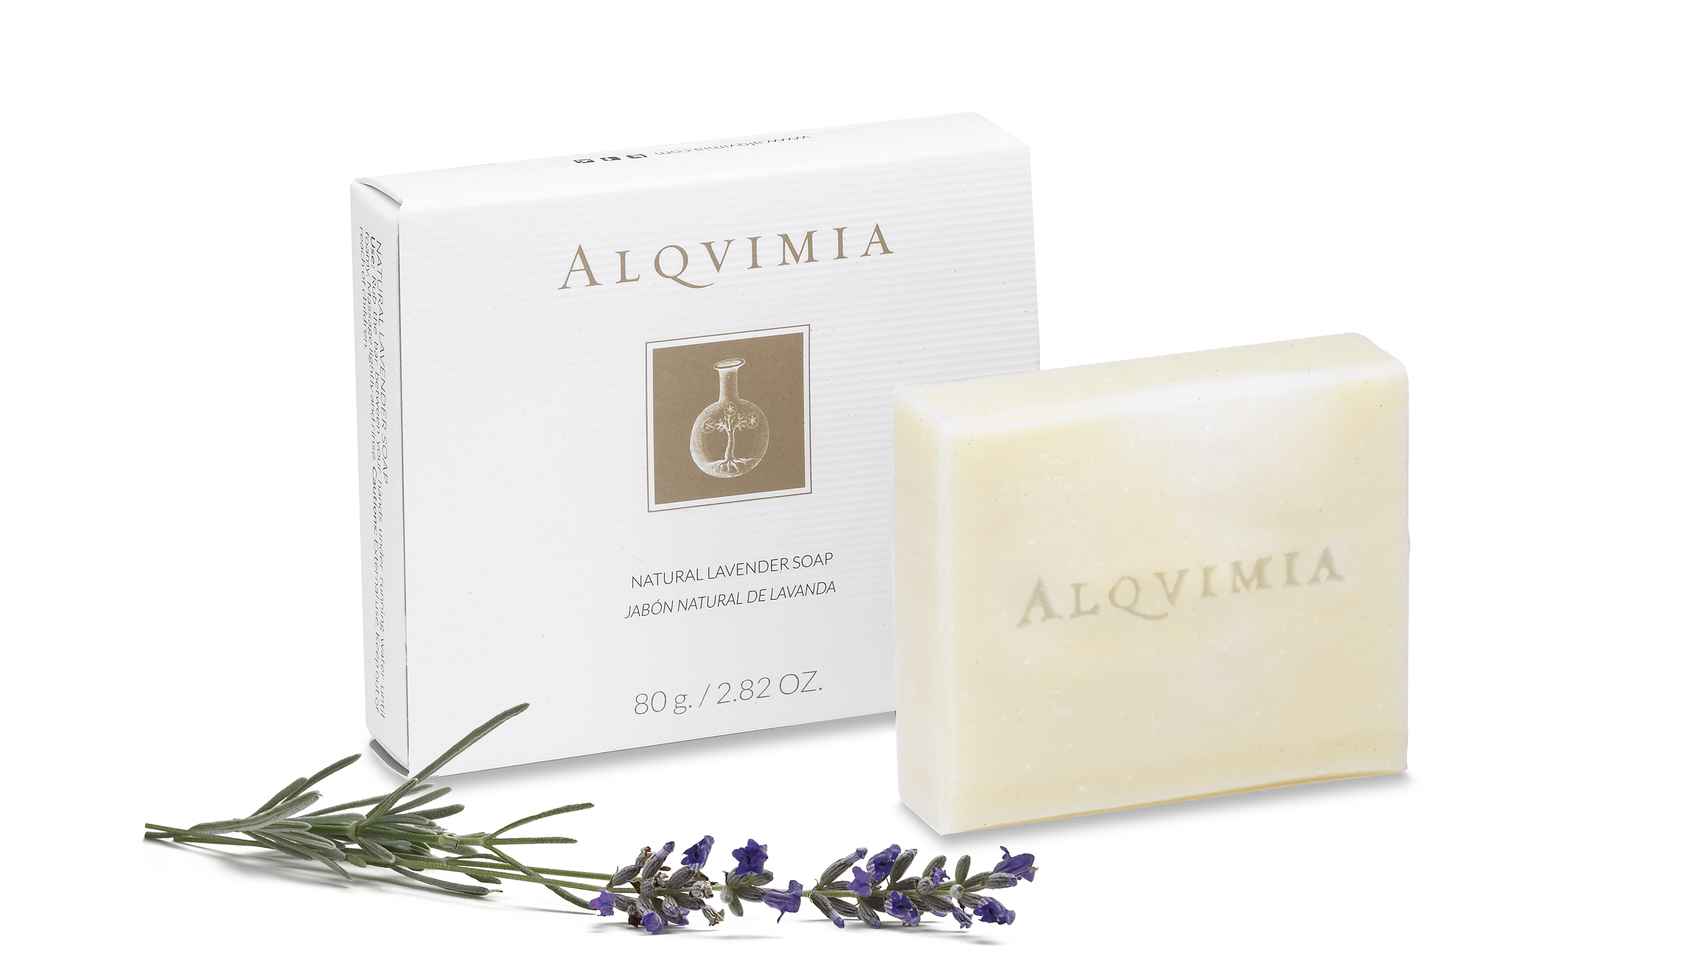 Natural Lavender Soap Alquimia.